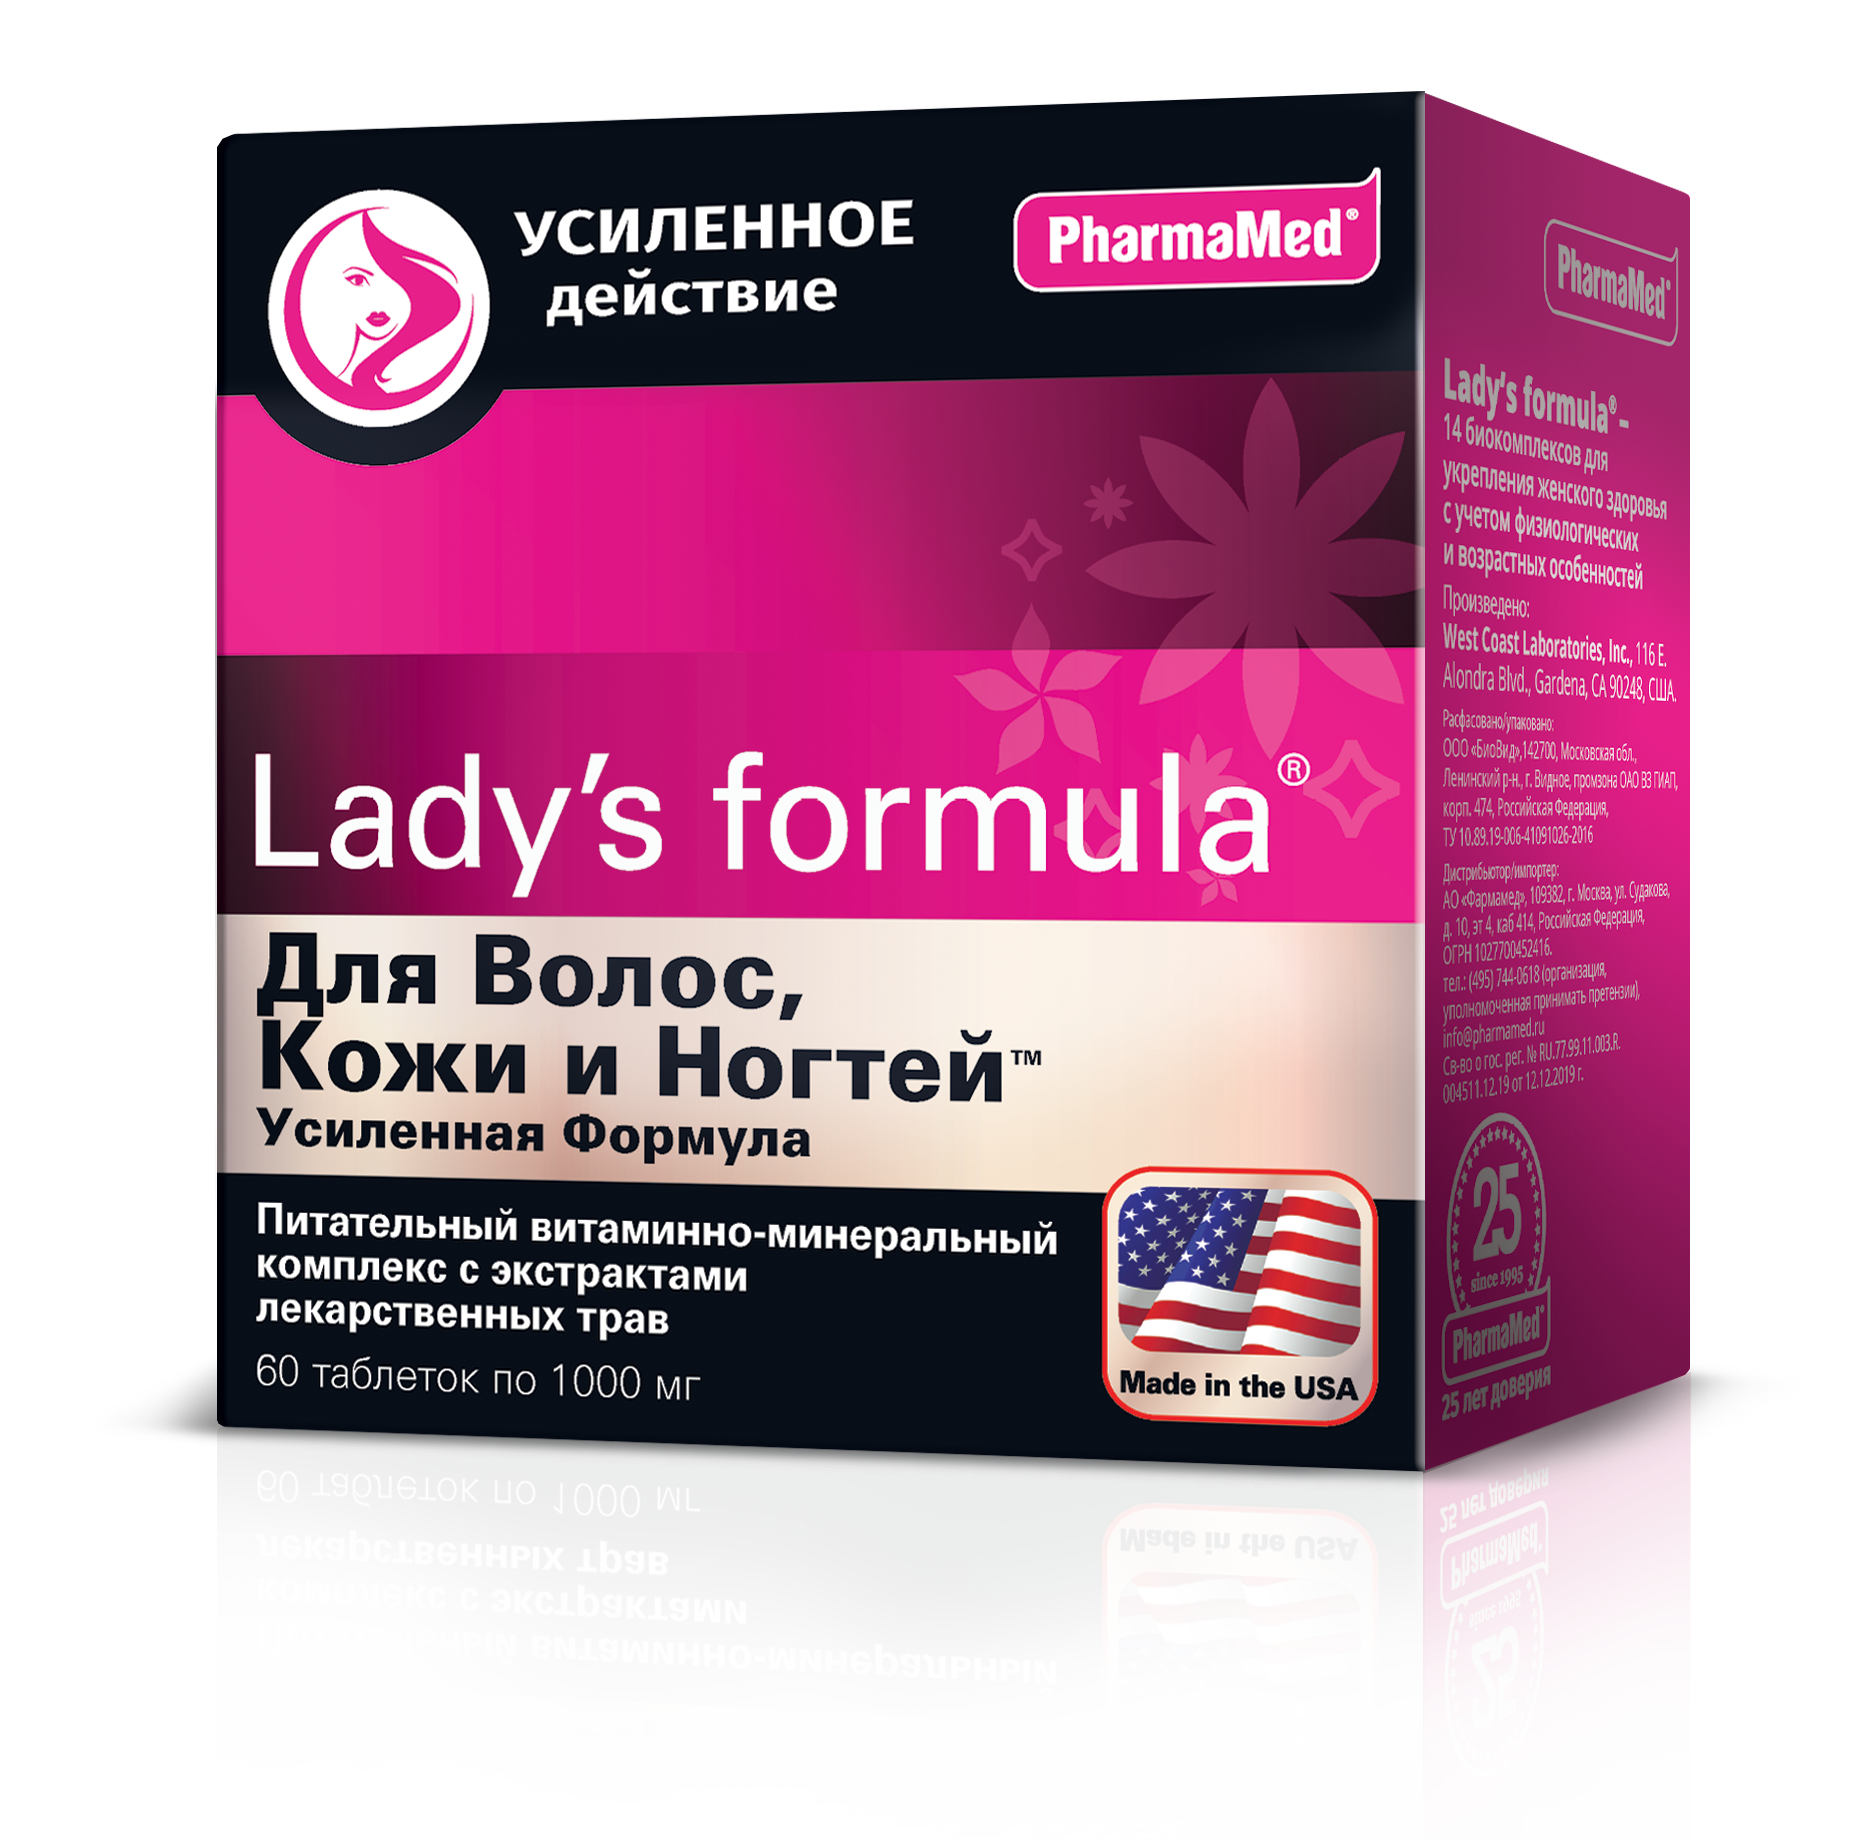 Lady's formula Для волос, кожи и ногтей Усиленная формула, таблетки 1000 мг, 60 шт. urban formula антистрессовый комплекс с 5 htp stress management